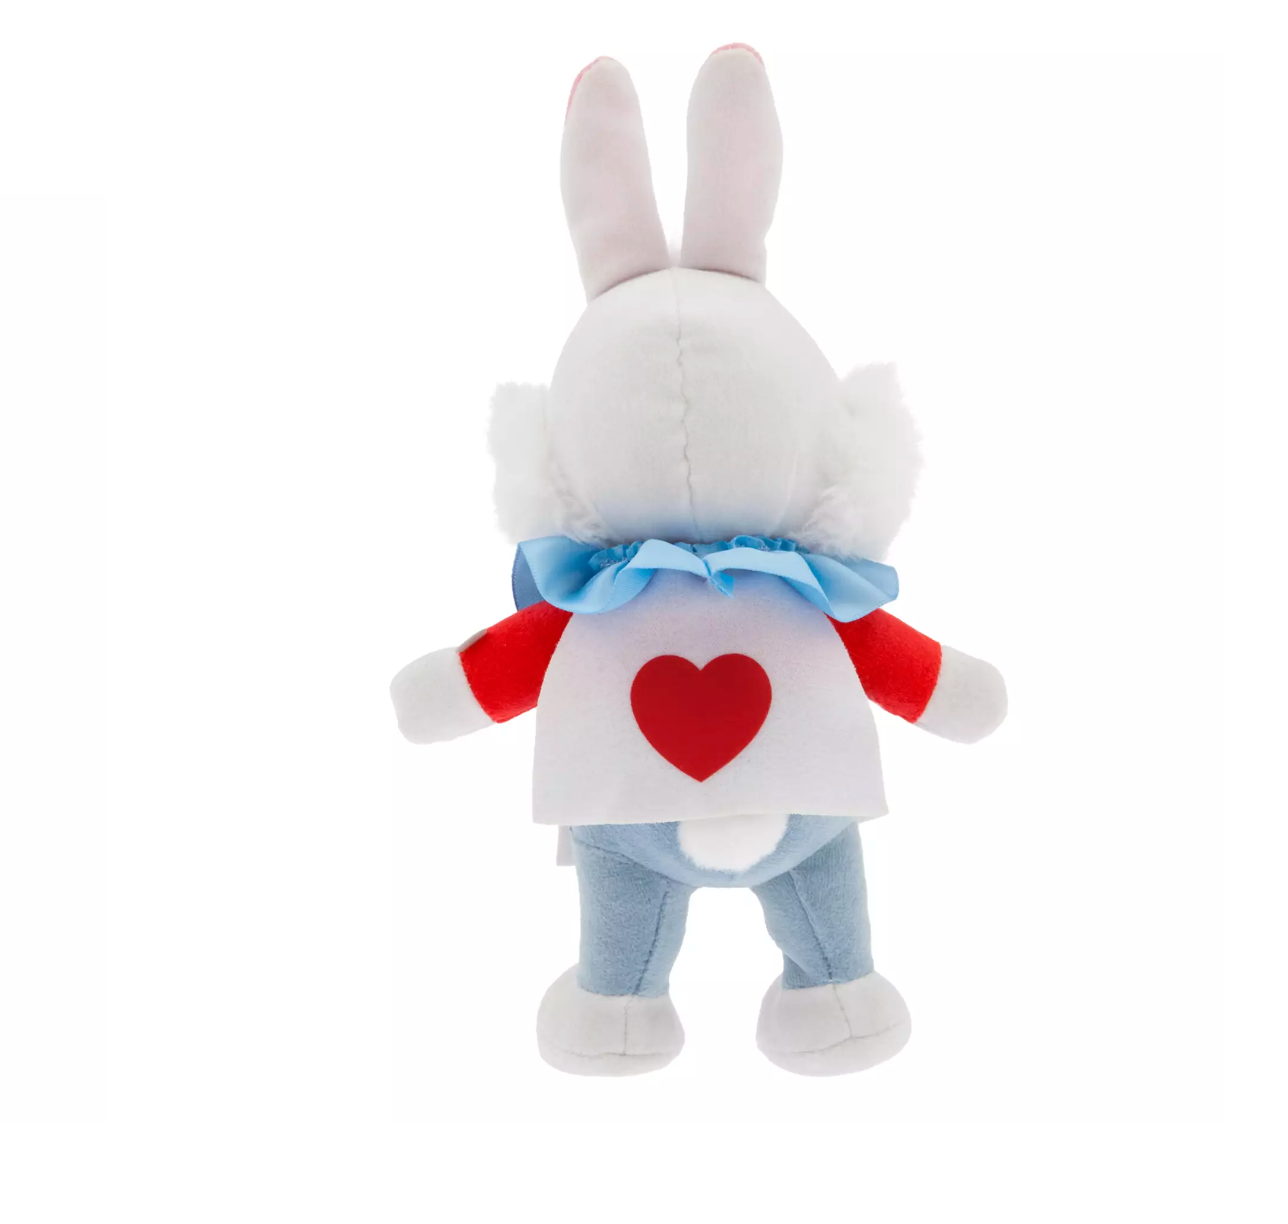 Disney NuiMOs White Rabbit Plush New with Tag